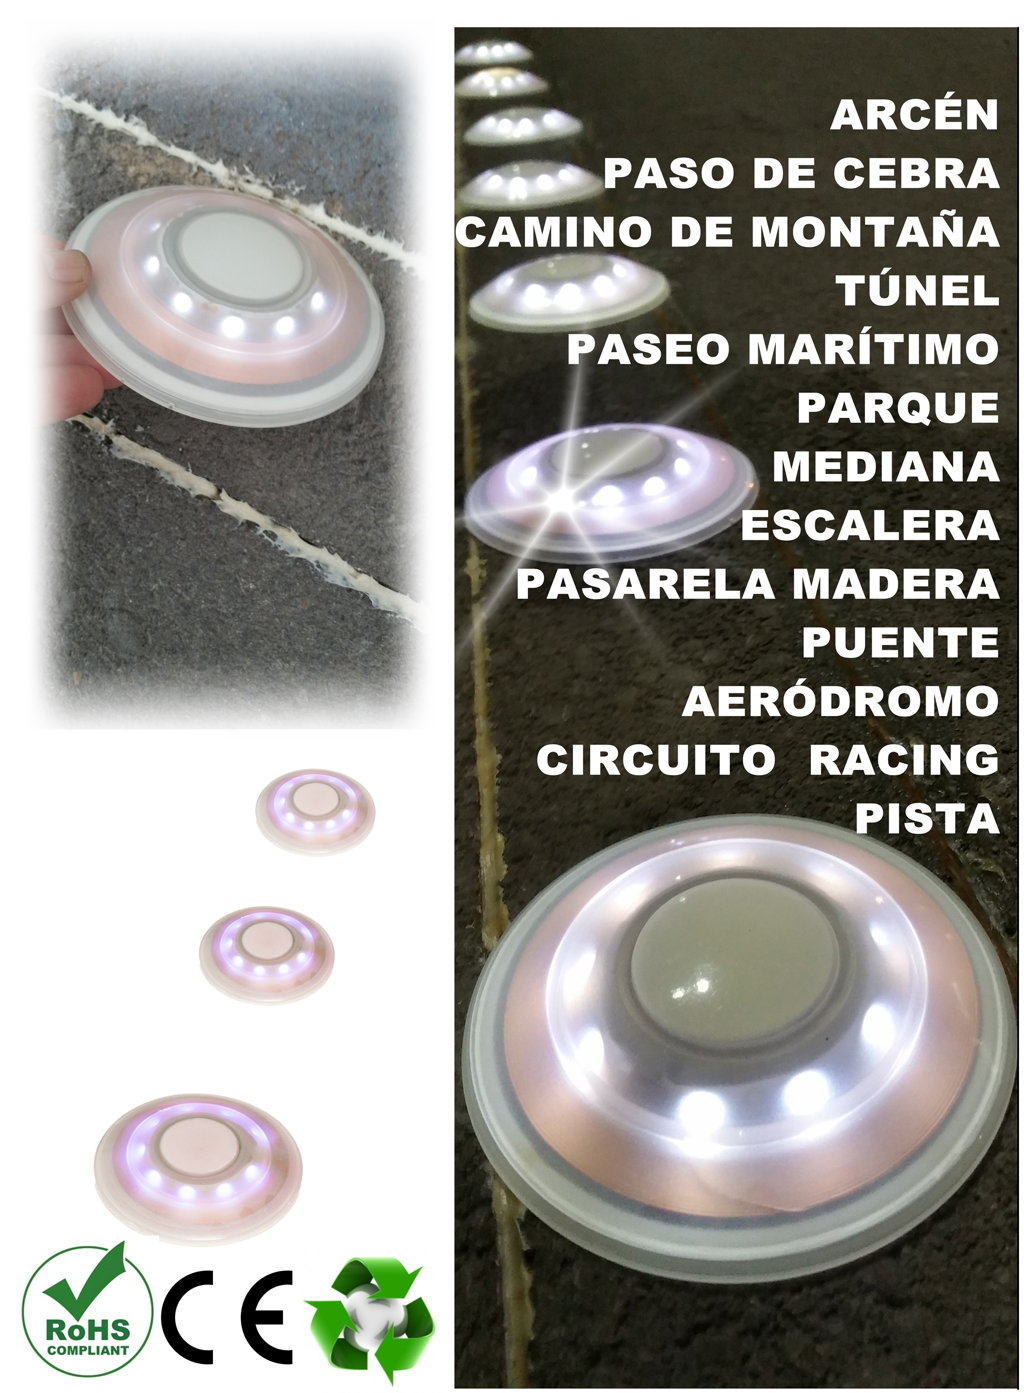 Teslec® ilumina el camino con bombillas inalámbricas únicas en su